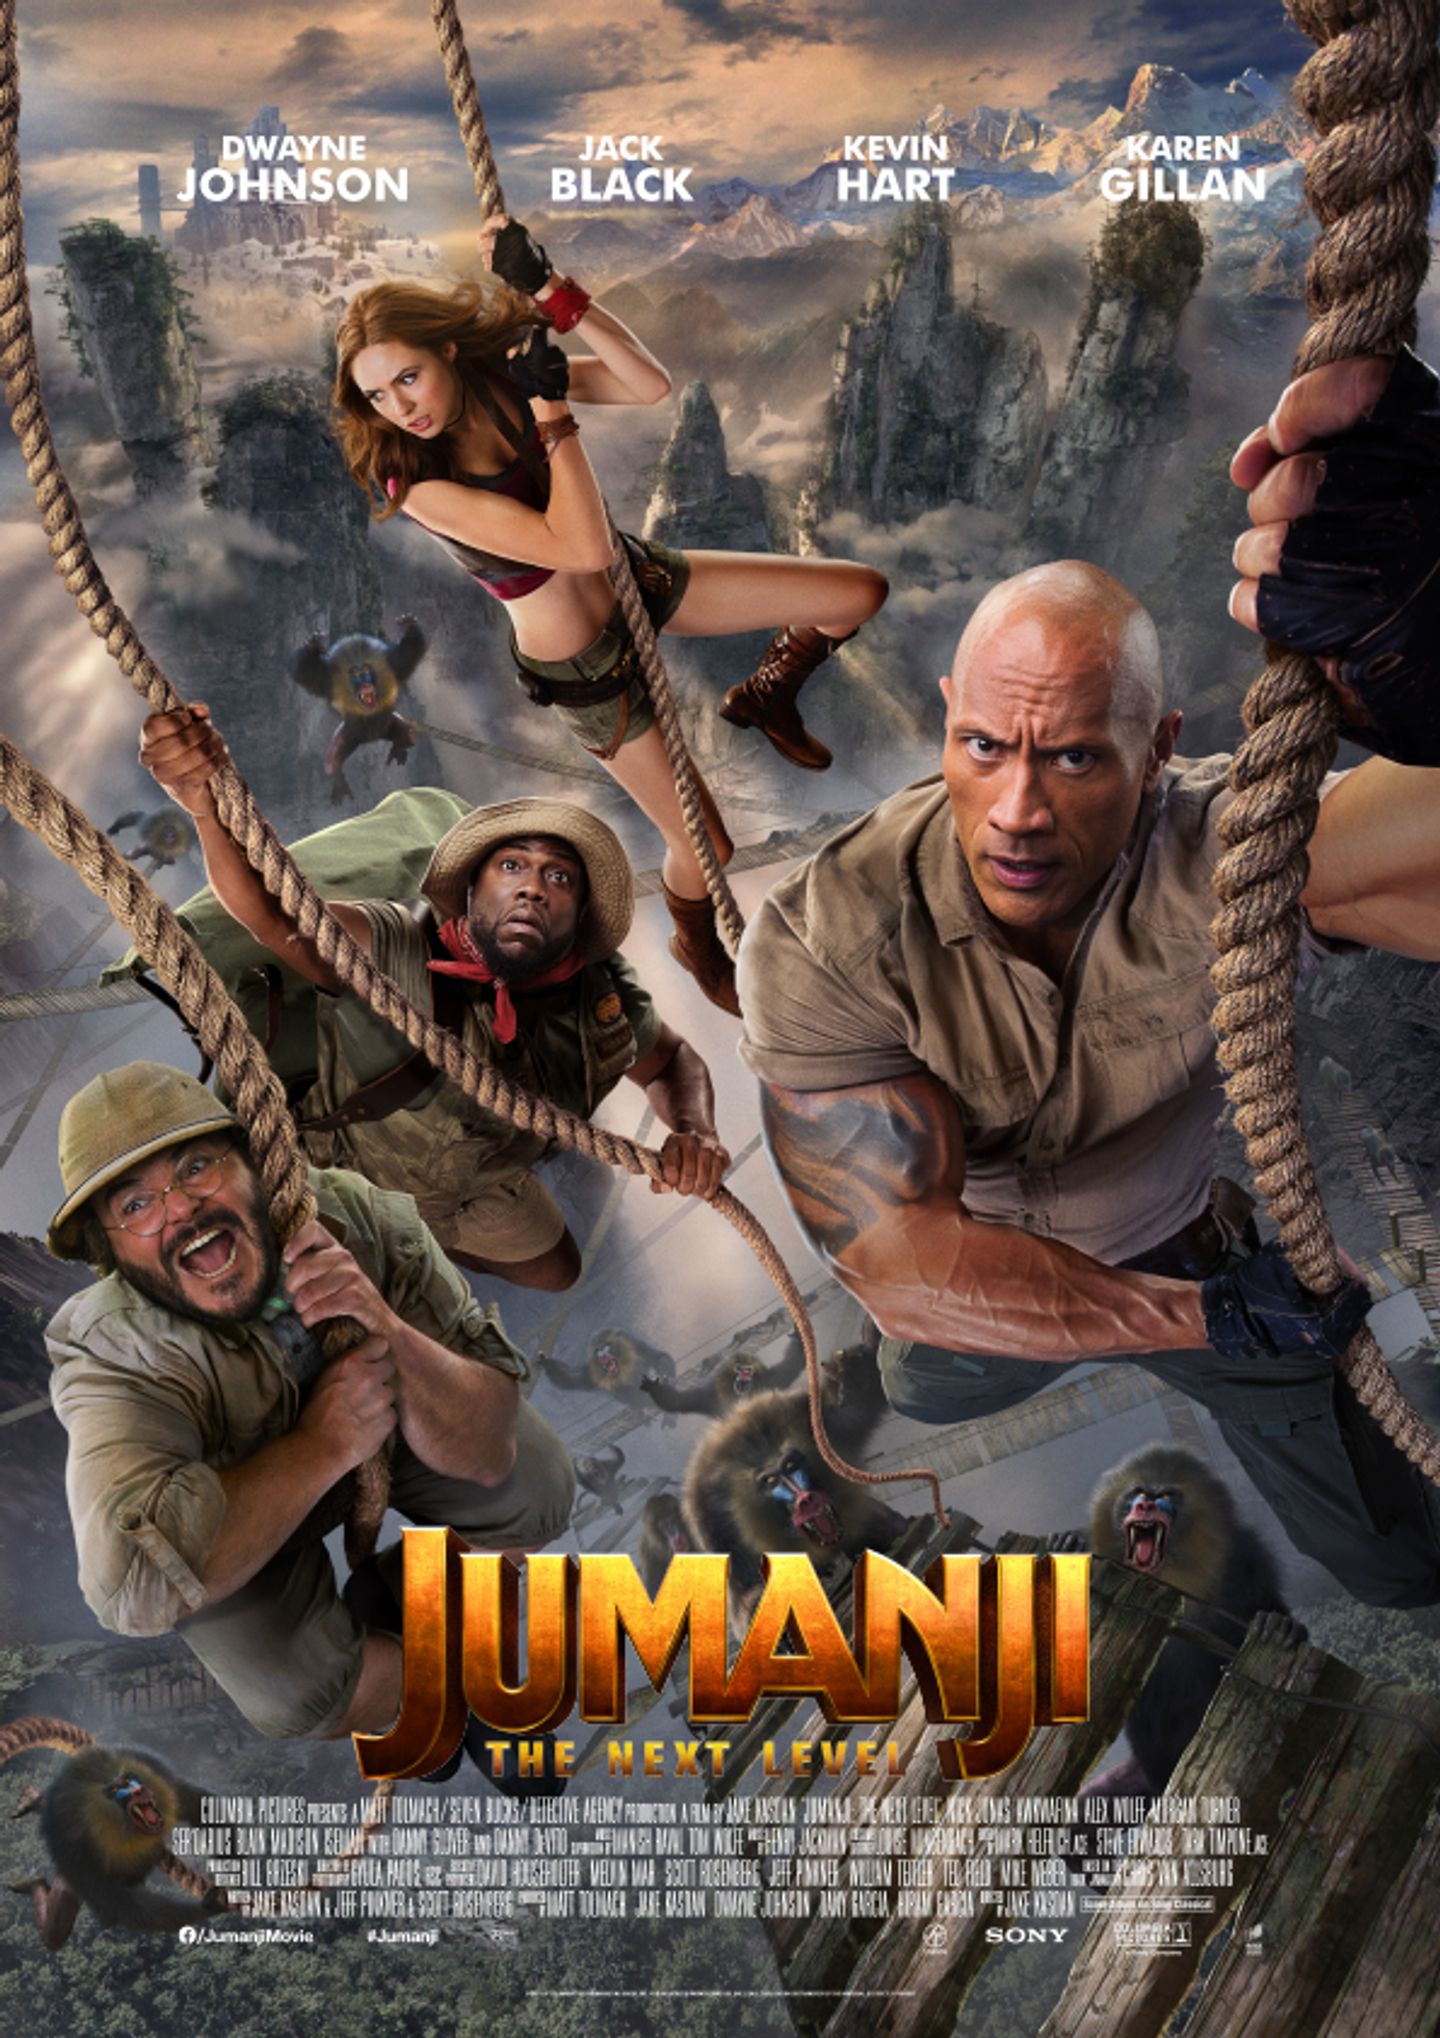 Plakat for 'Jumanji: The Next Level'